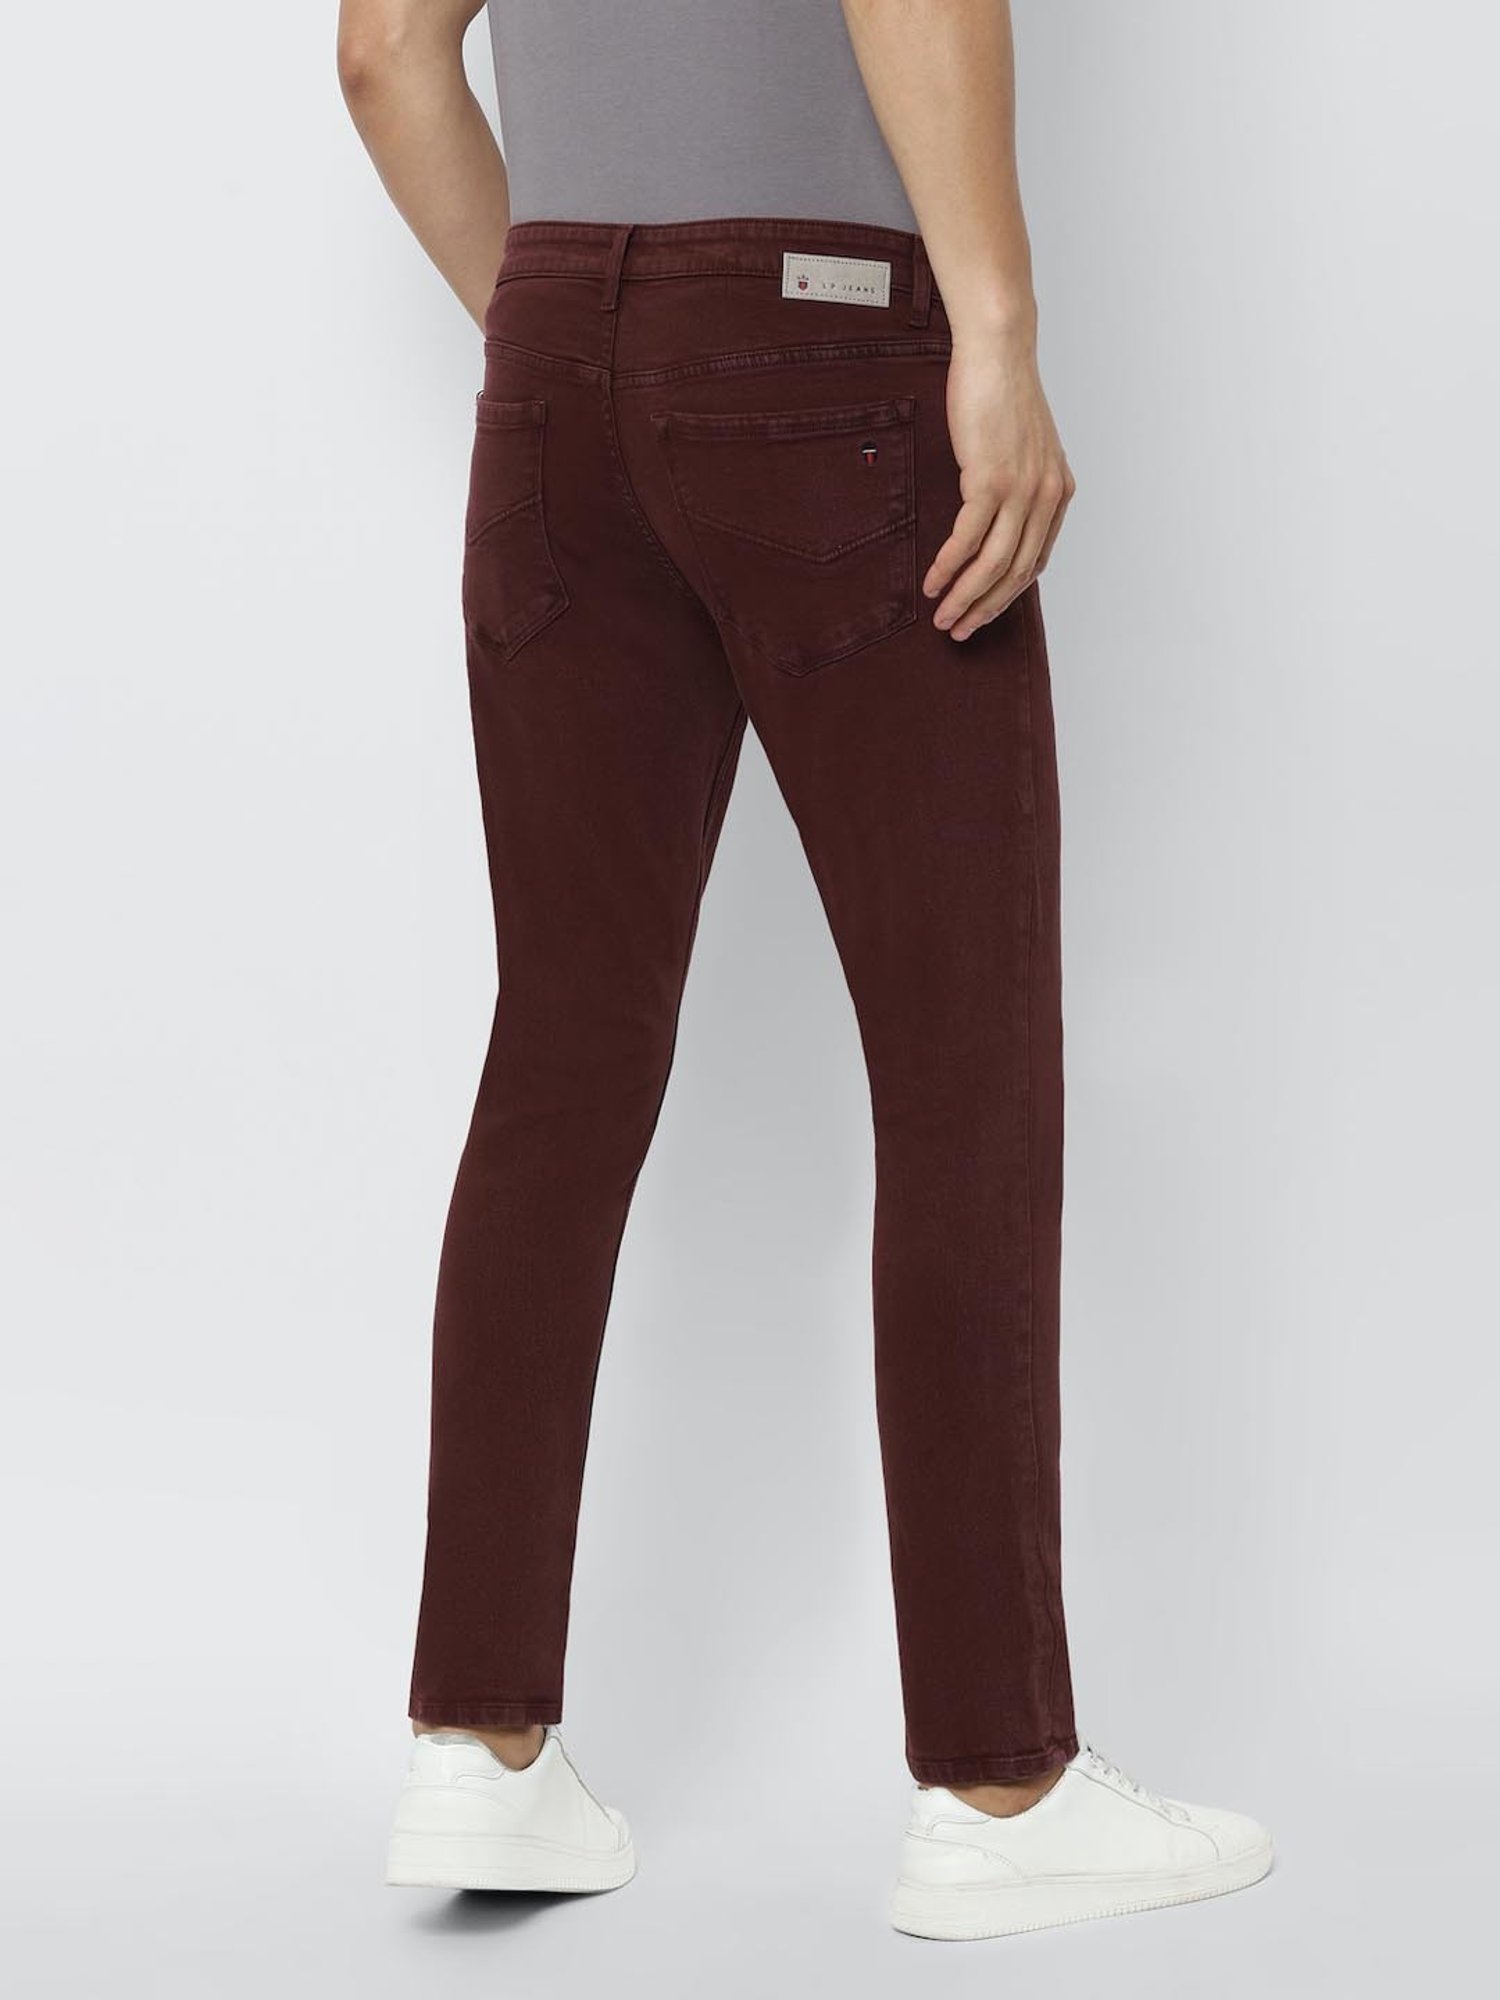 ASOS DESIGN skinny jeans in burgundy | ASOS